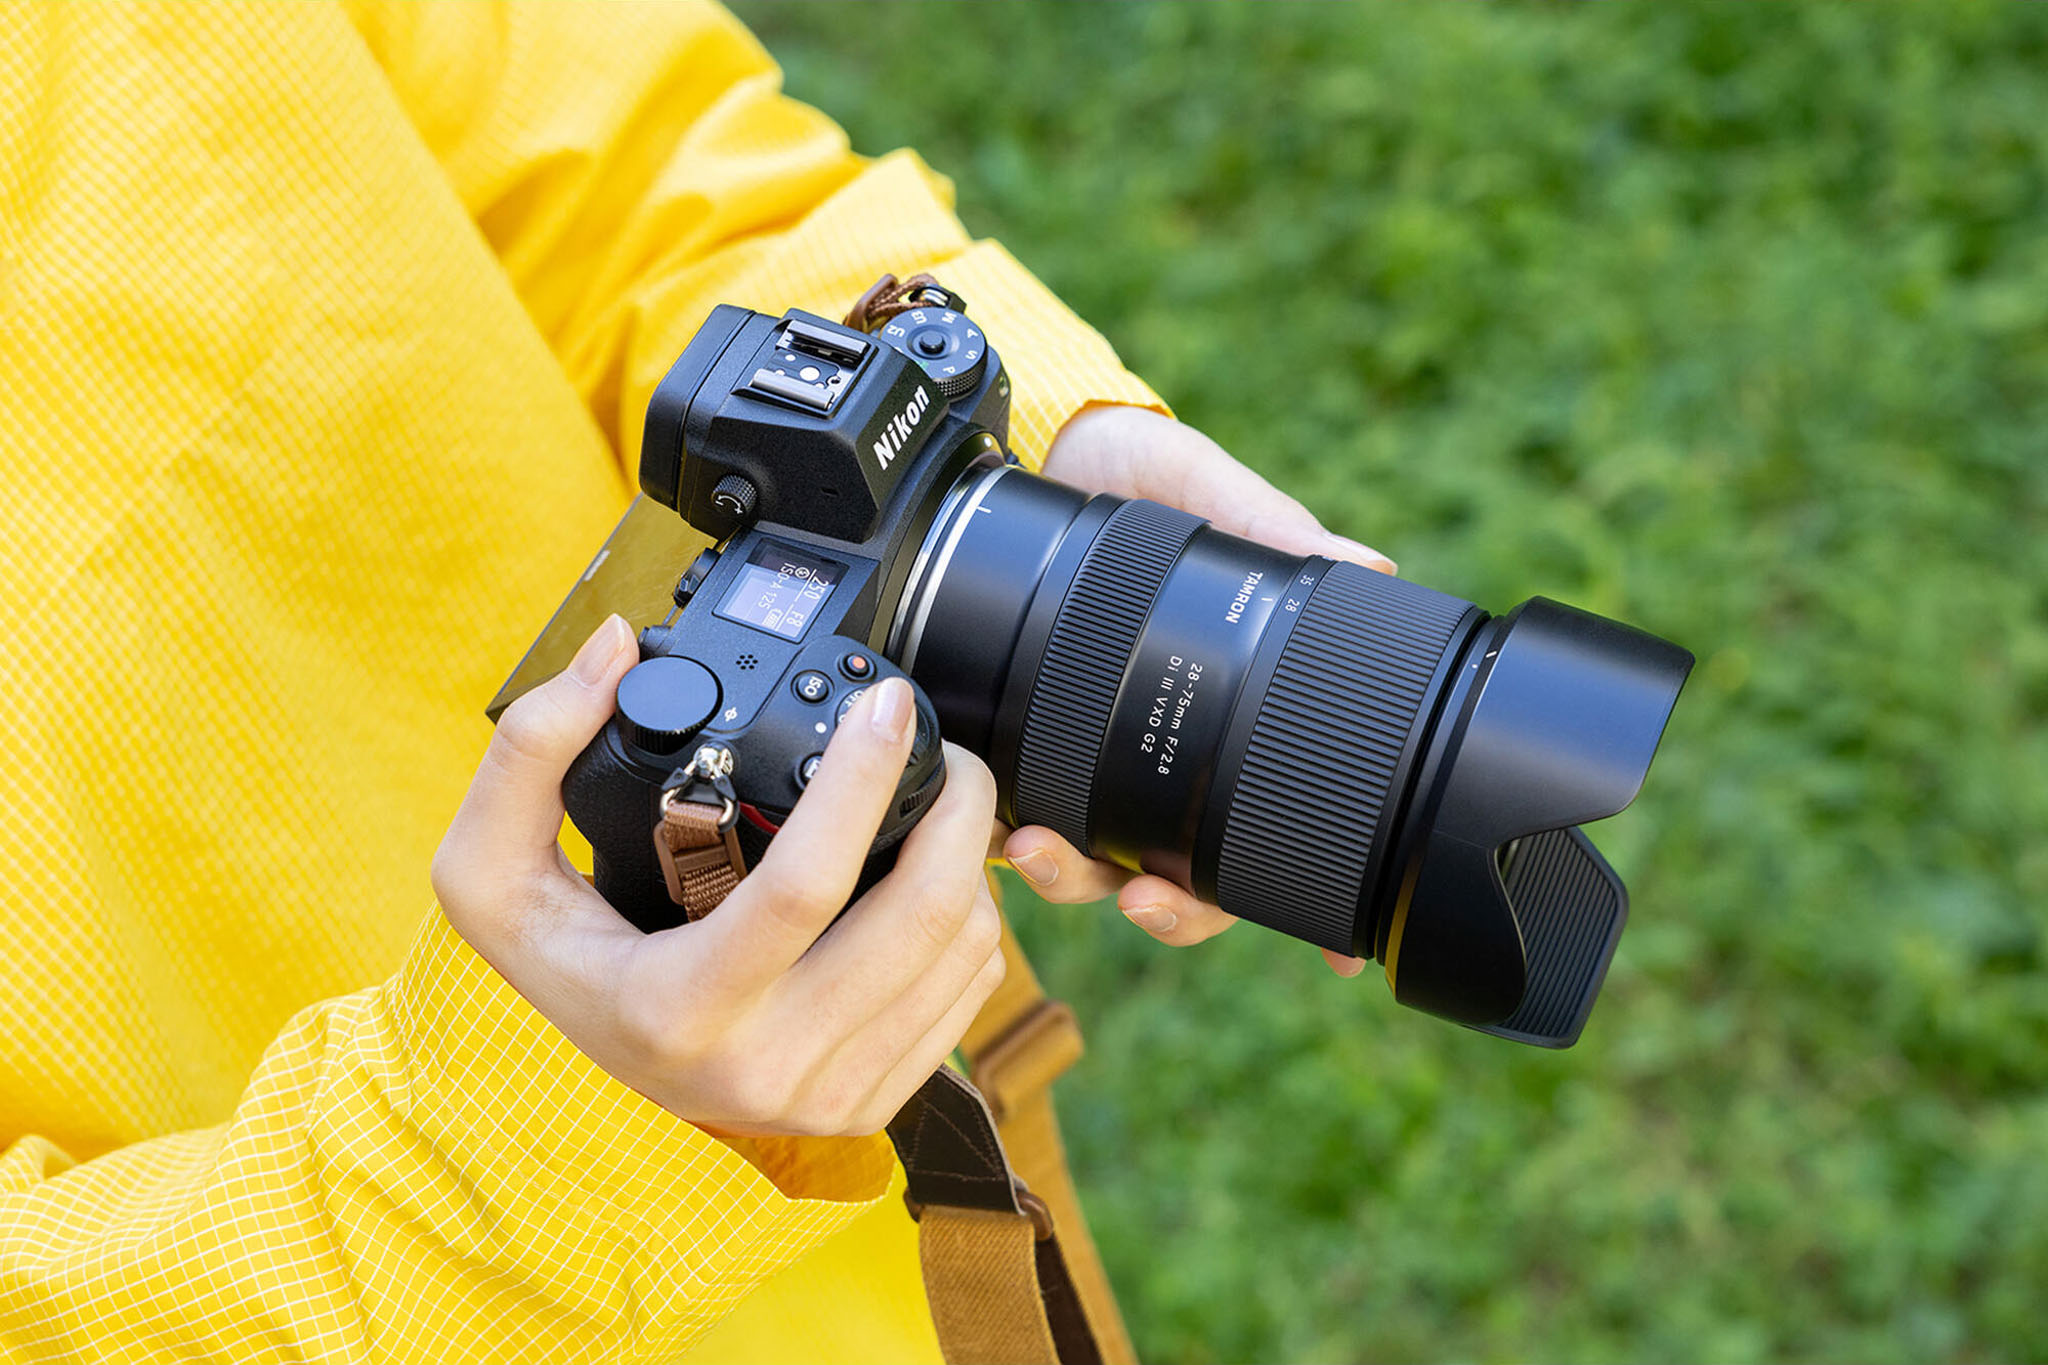 Tamron ra mắt ống kính 28-75mm f/2.8 G2 cho ngàm Nikon Z, giá 999 USD